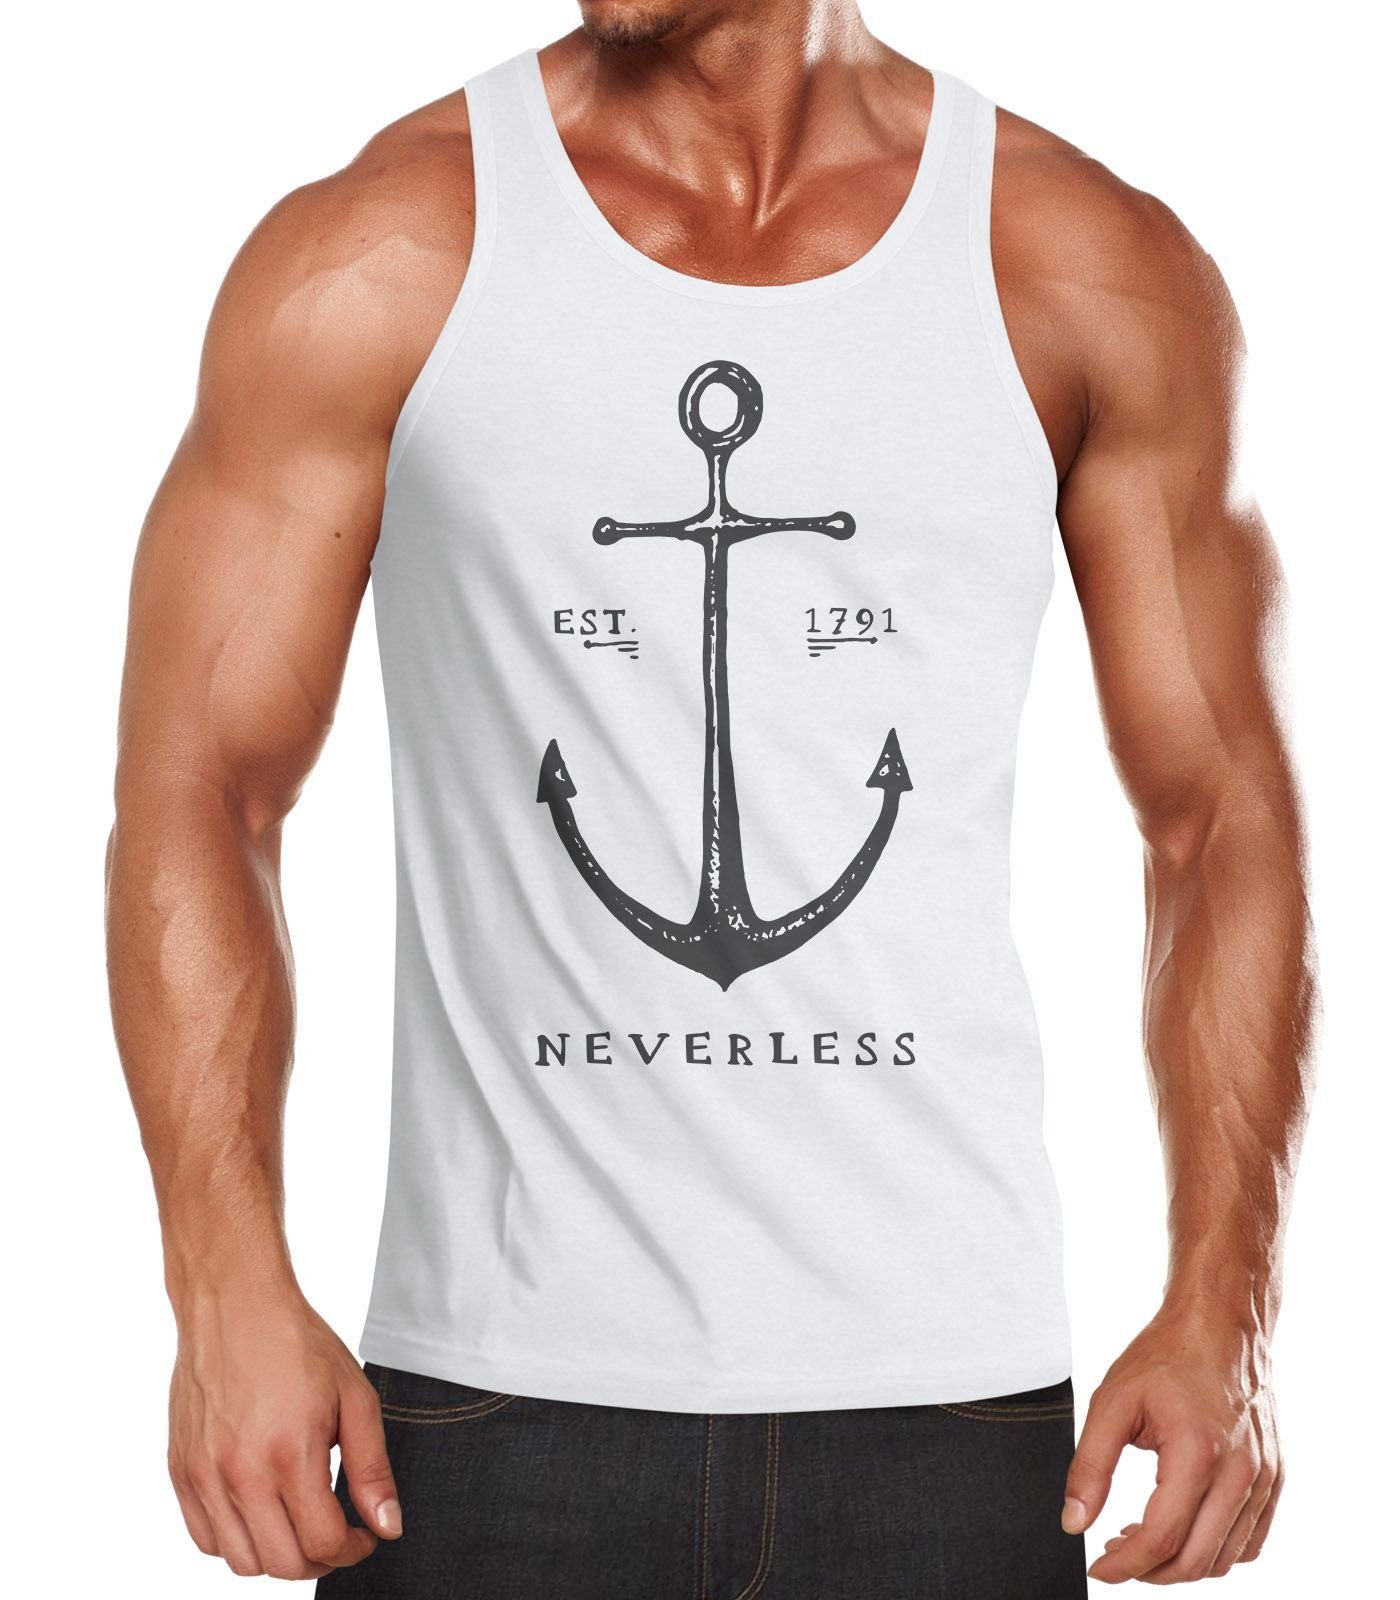 Neverless Tanktop »Herren Tank-Top Anker Muskelshirt Muscle Shirt  Achselshirt Neverless®« mit Print